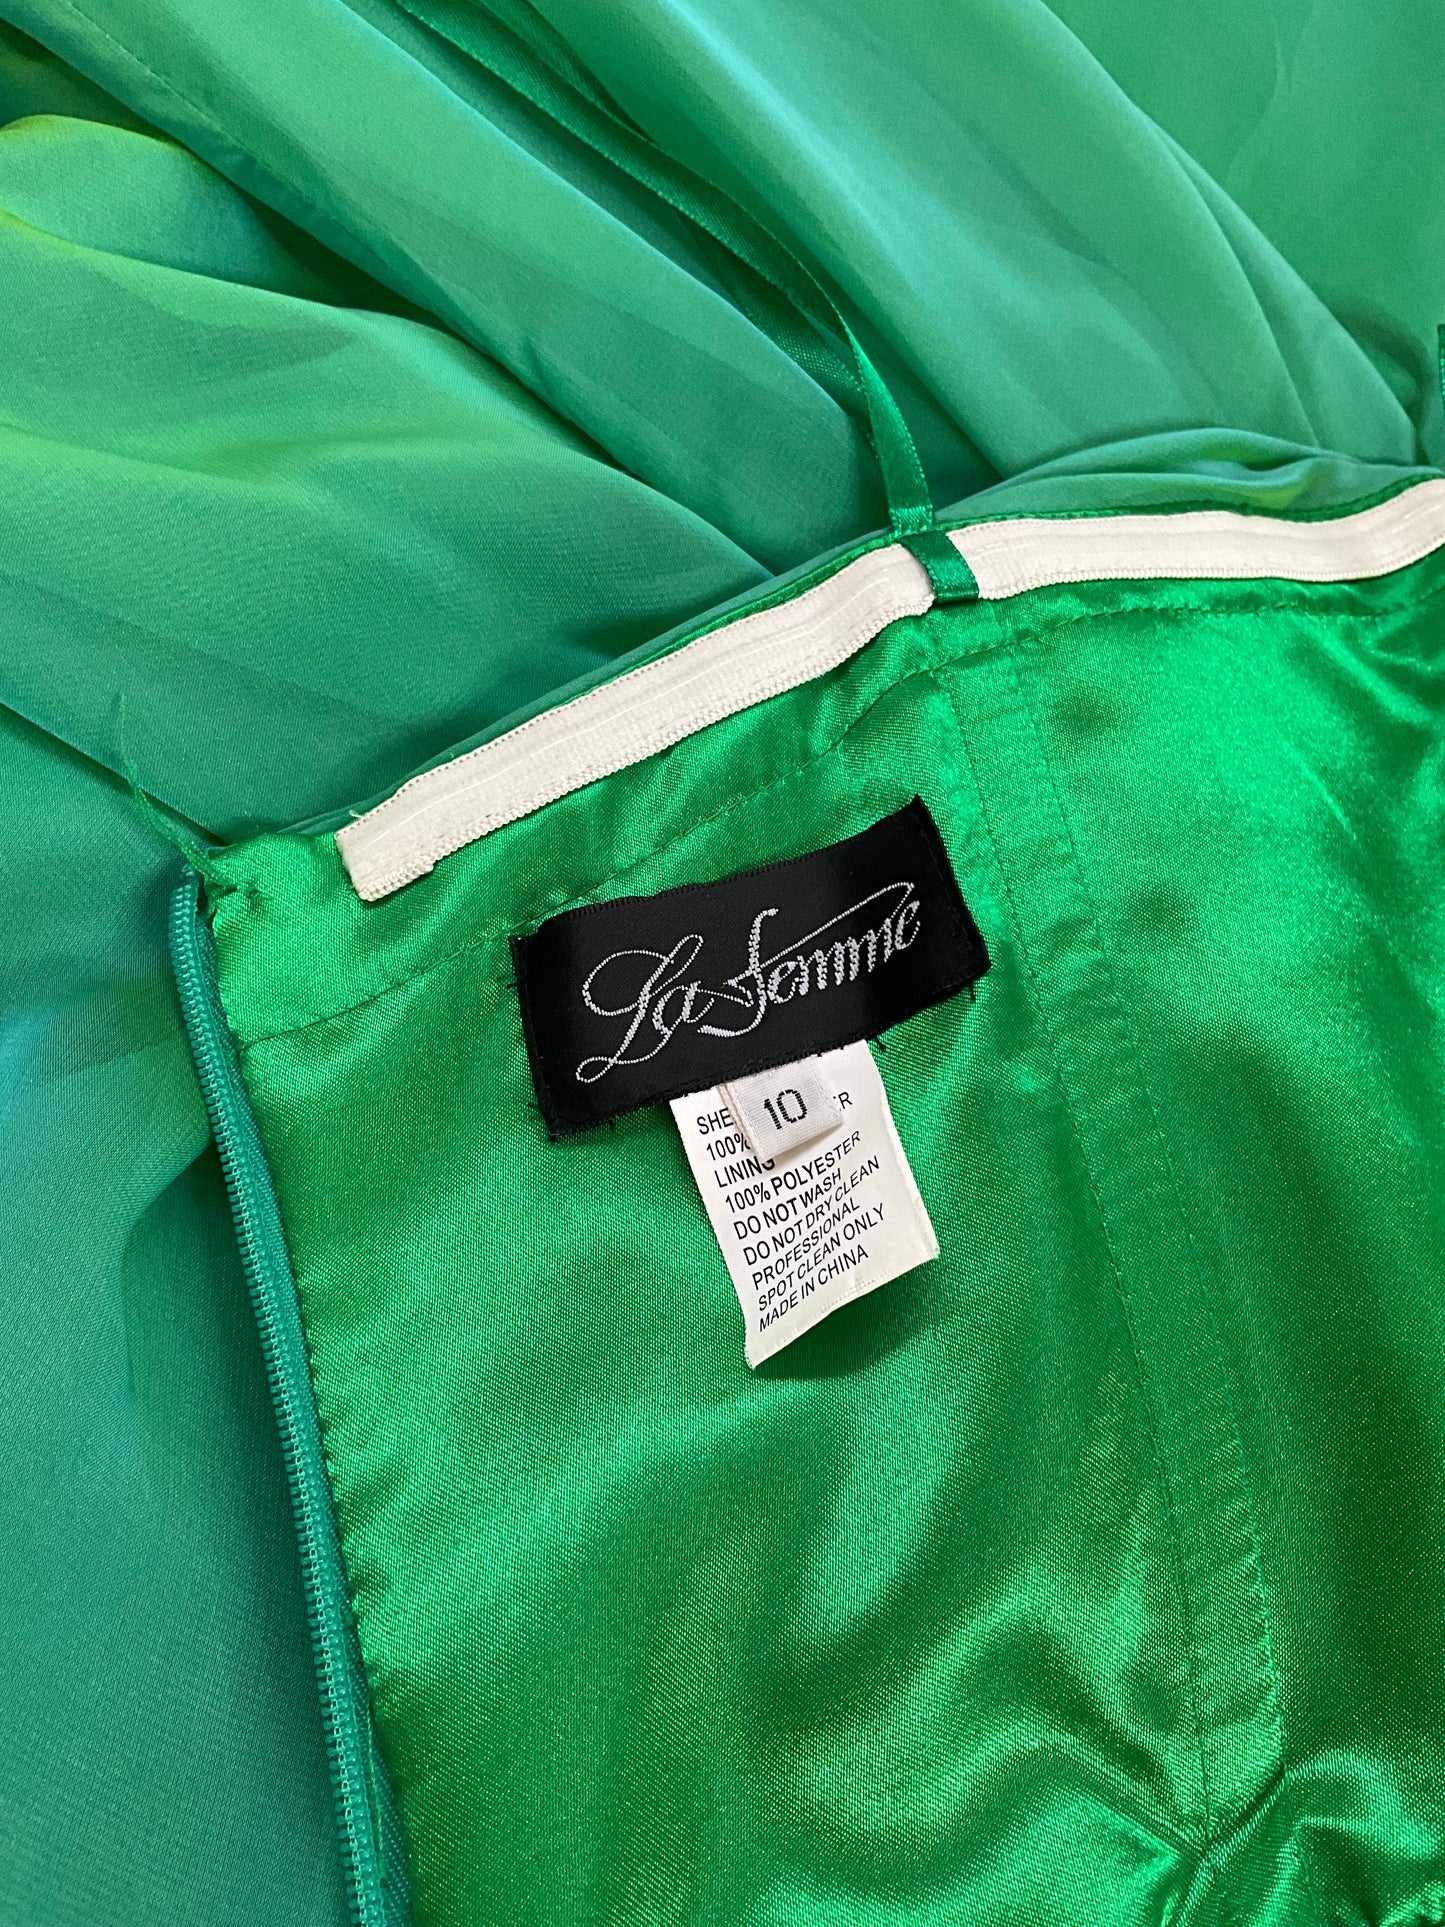 Vintage 2000s Iridescent Green Organza Gown, Medium